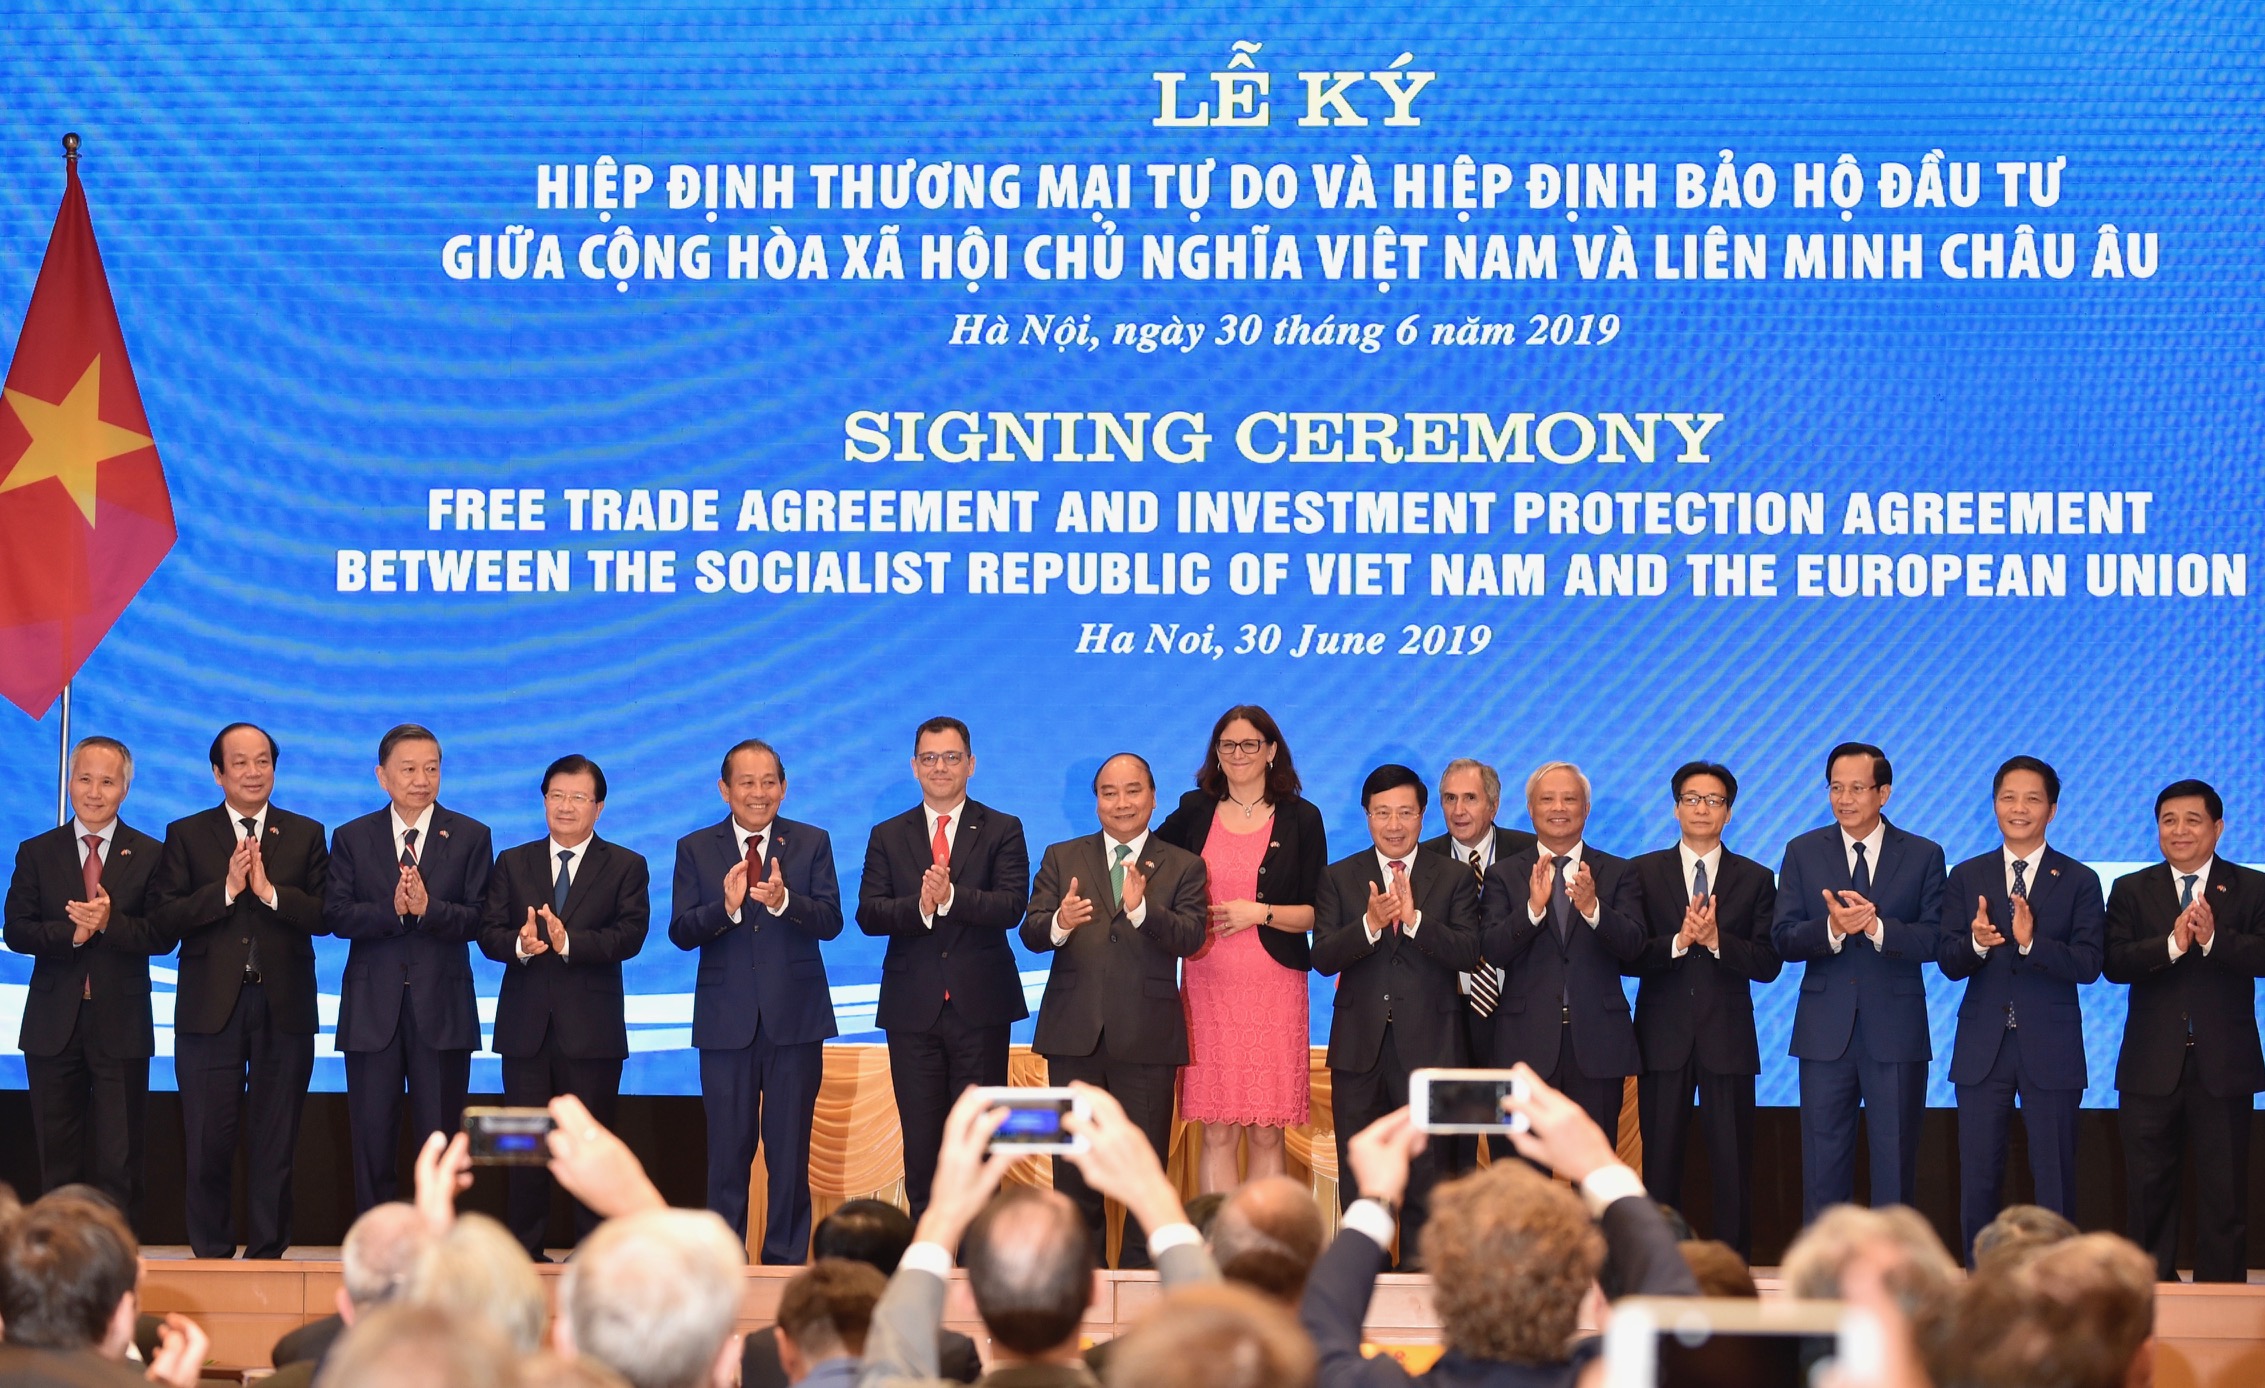 Hiệp định EVFTA và Hiệp định IPA giữa Việt Nam và Liên minh Châu Âu đã được ký kết - Ảnh 2